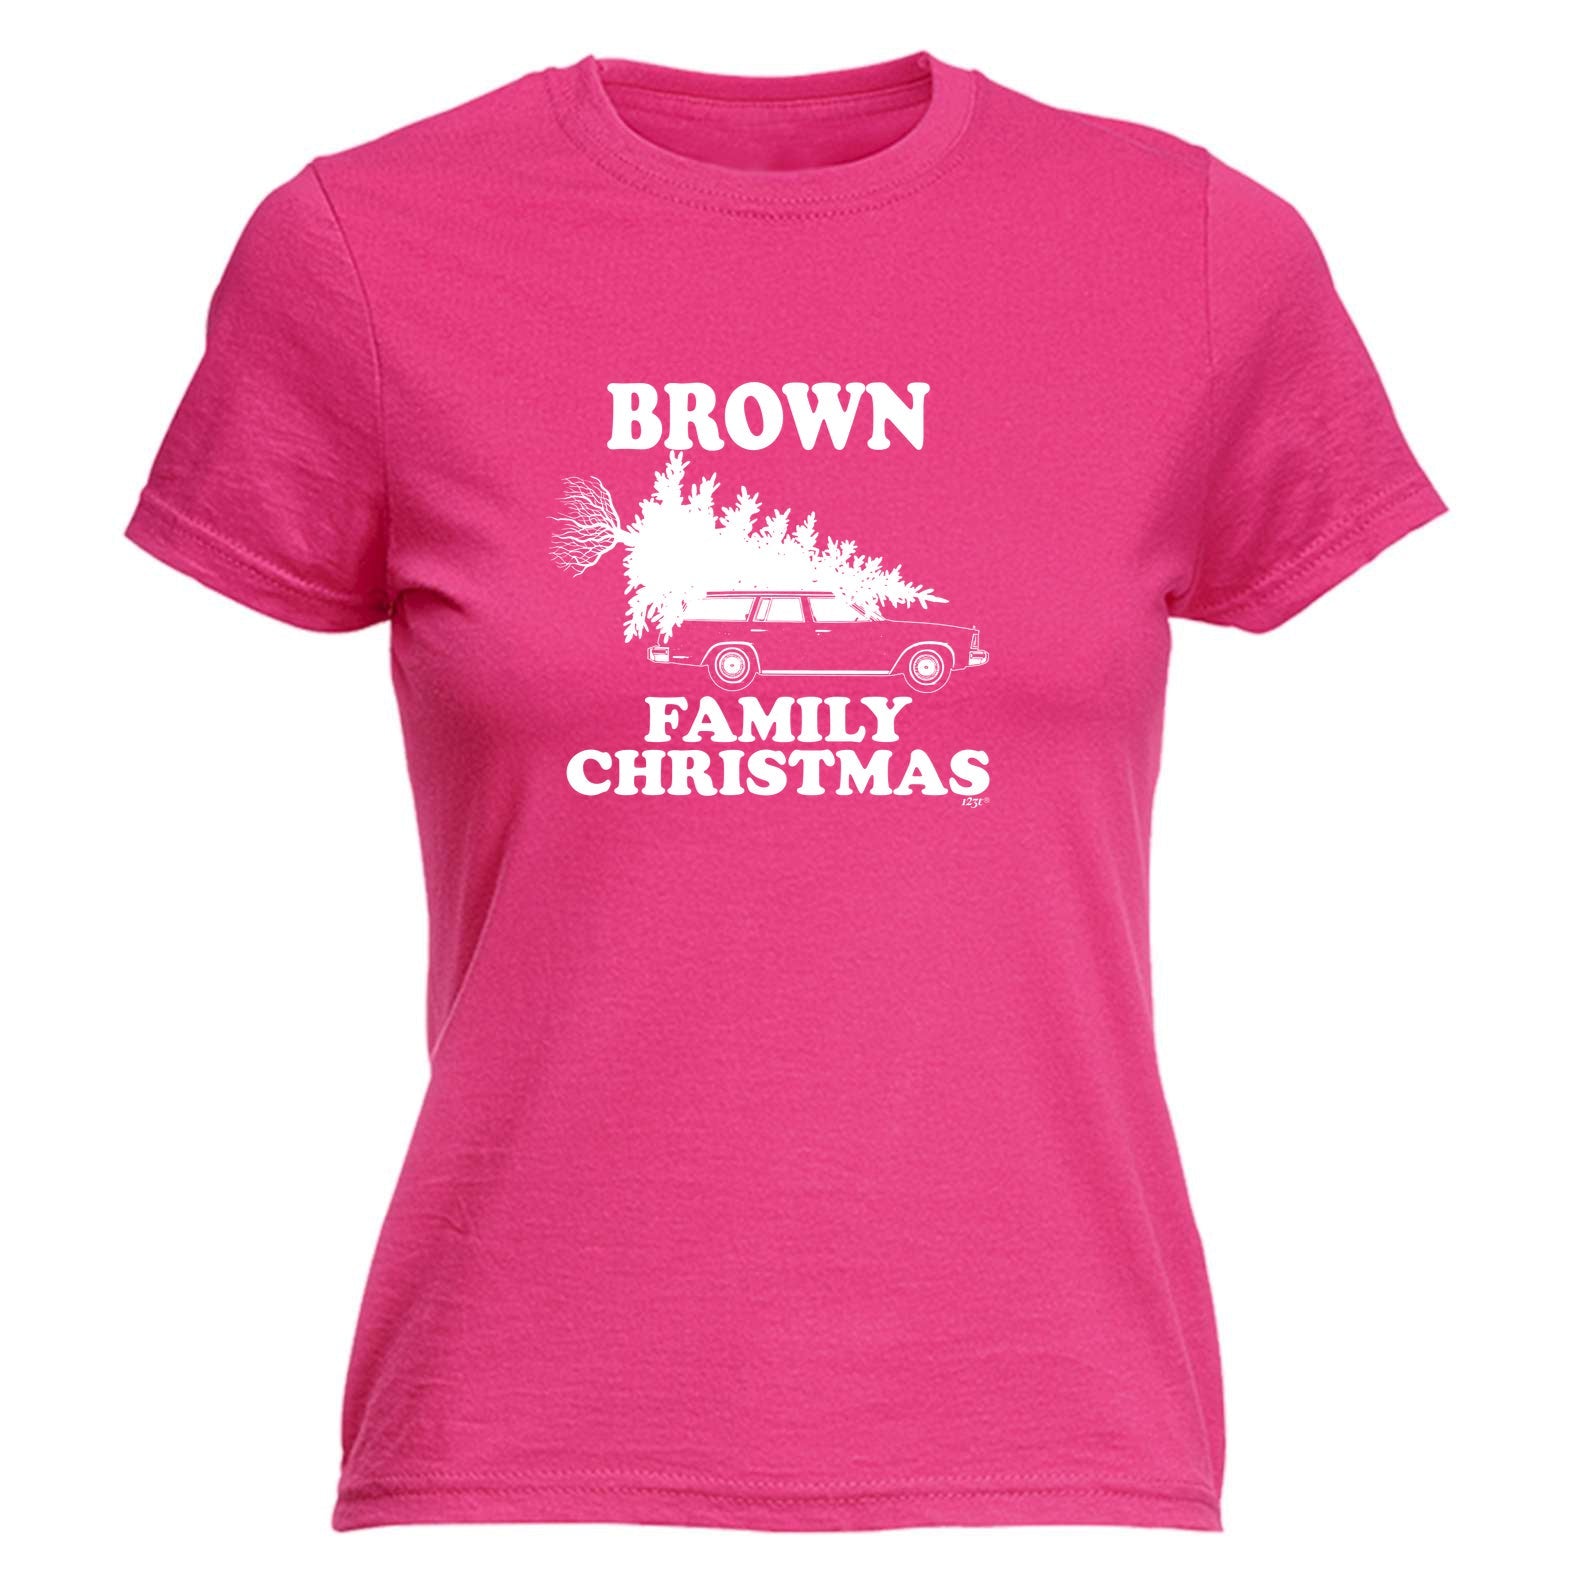 Family Christmas Brown - Funny Womens T-Shirt Tshirt